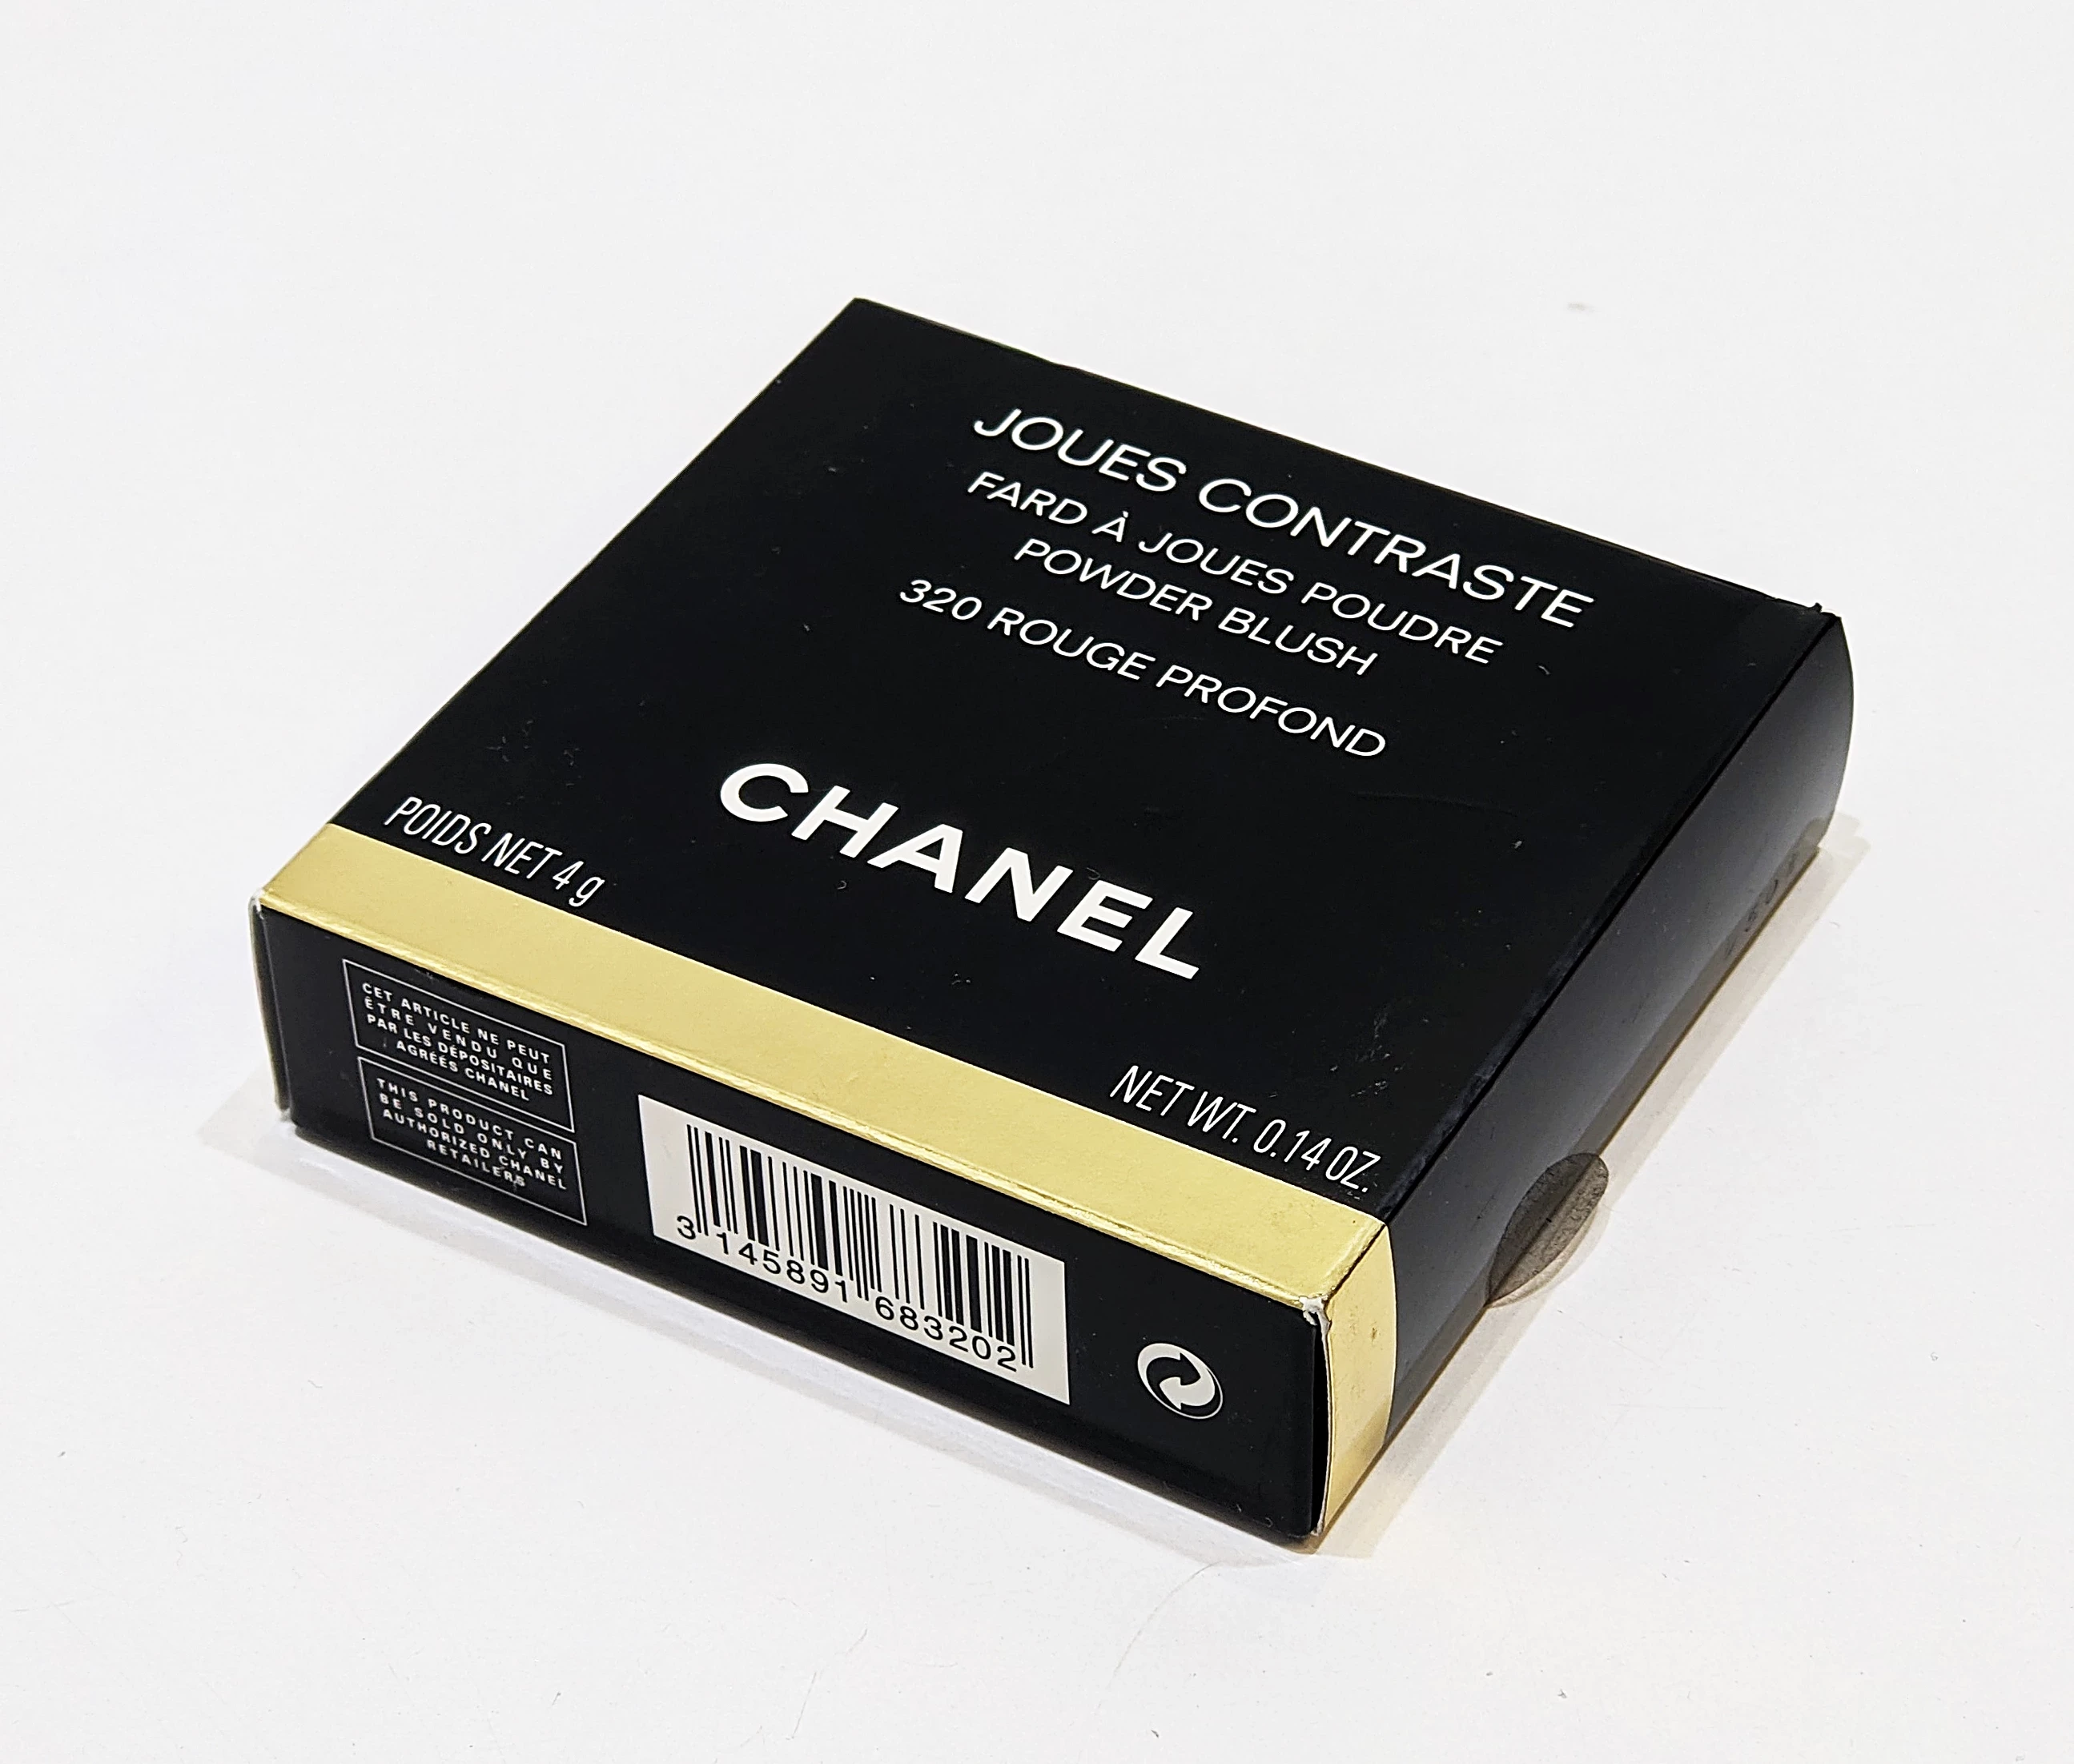 Chanel Joues Contraste Powder Blush - # 320 Rouge Profond 0.14 oz Blush 